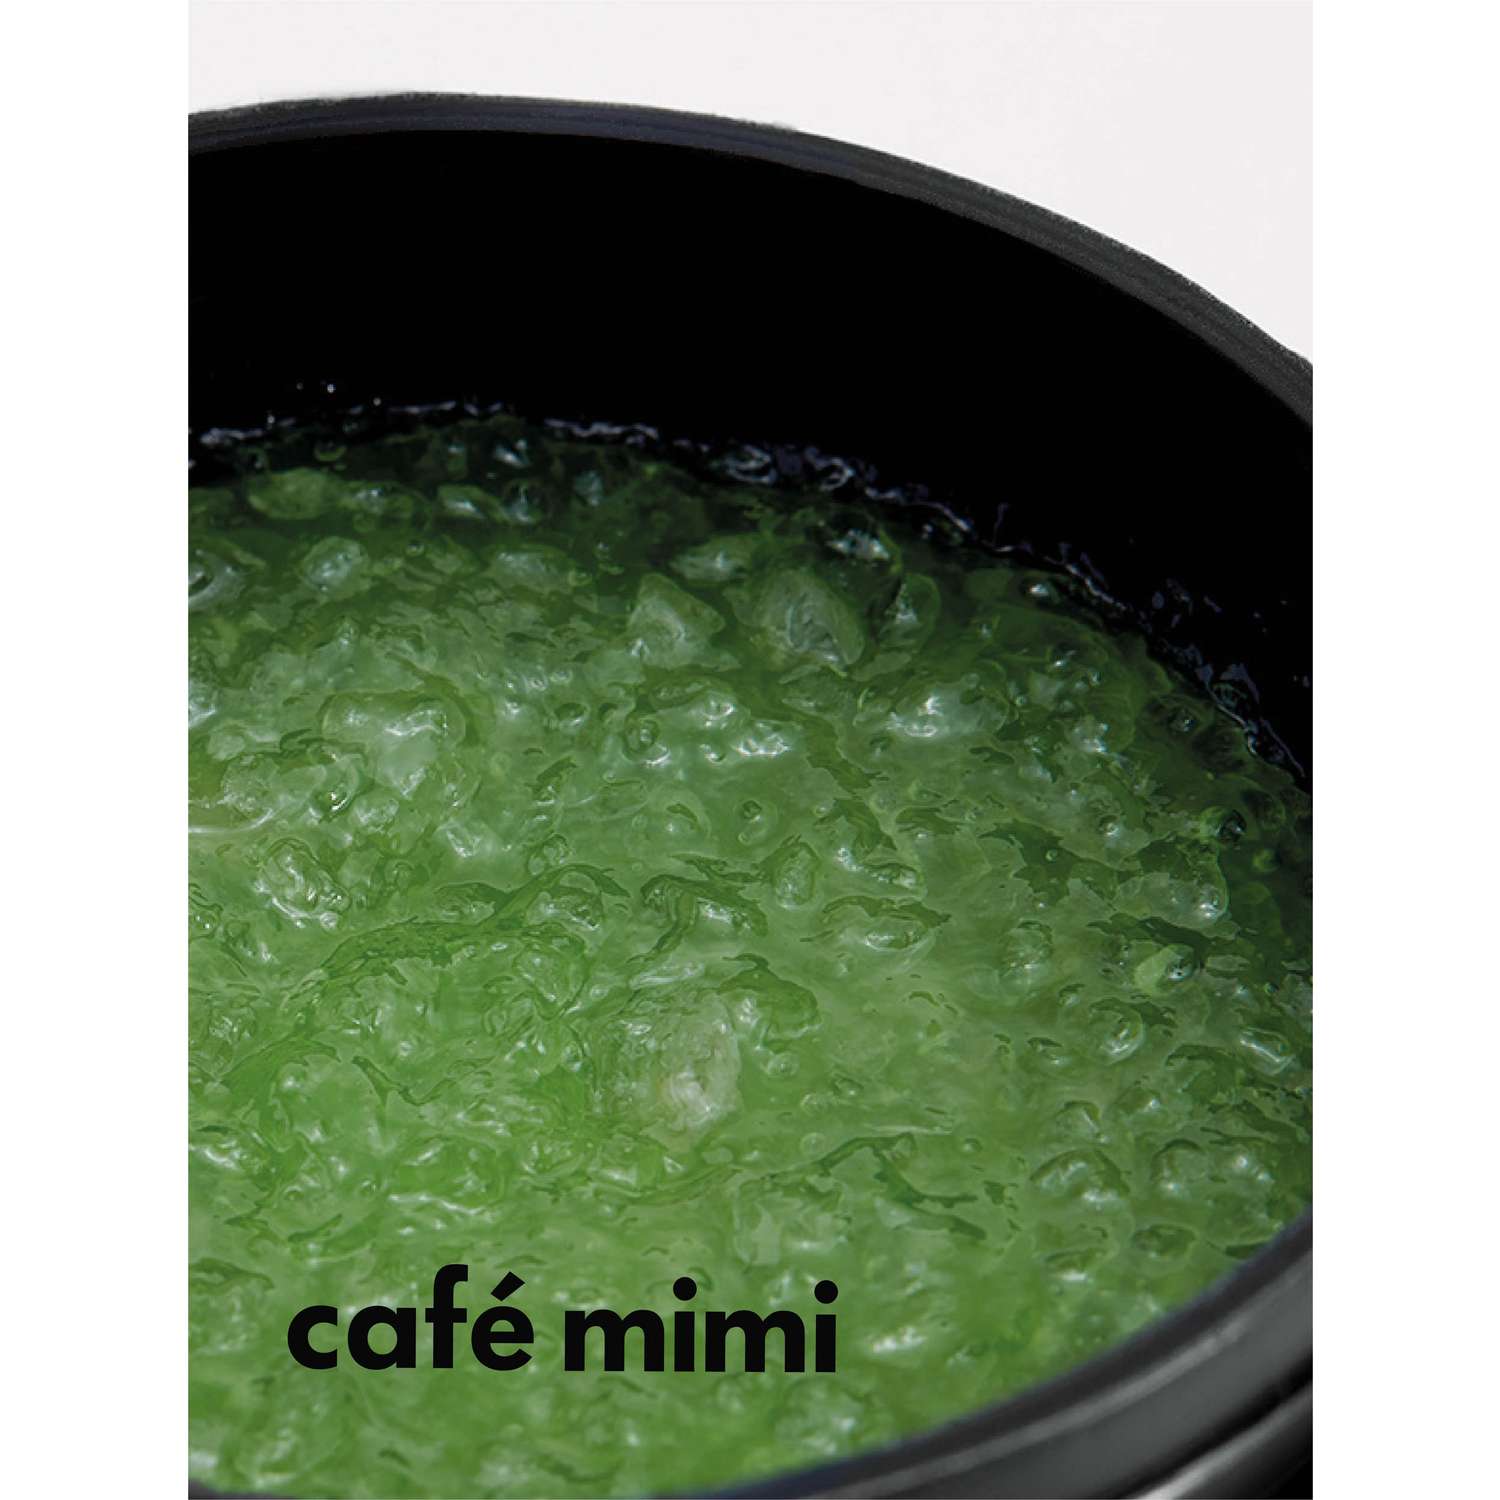 Шампунь-Скраб cafe mimi Очищение и Суперобъем 330 гр - фото 4